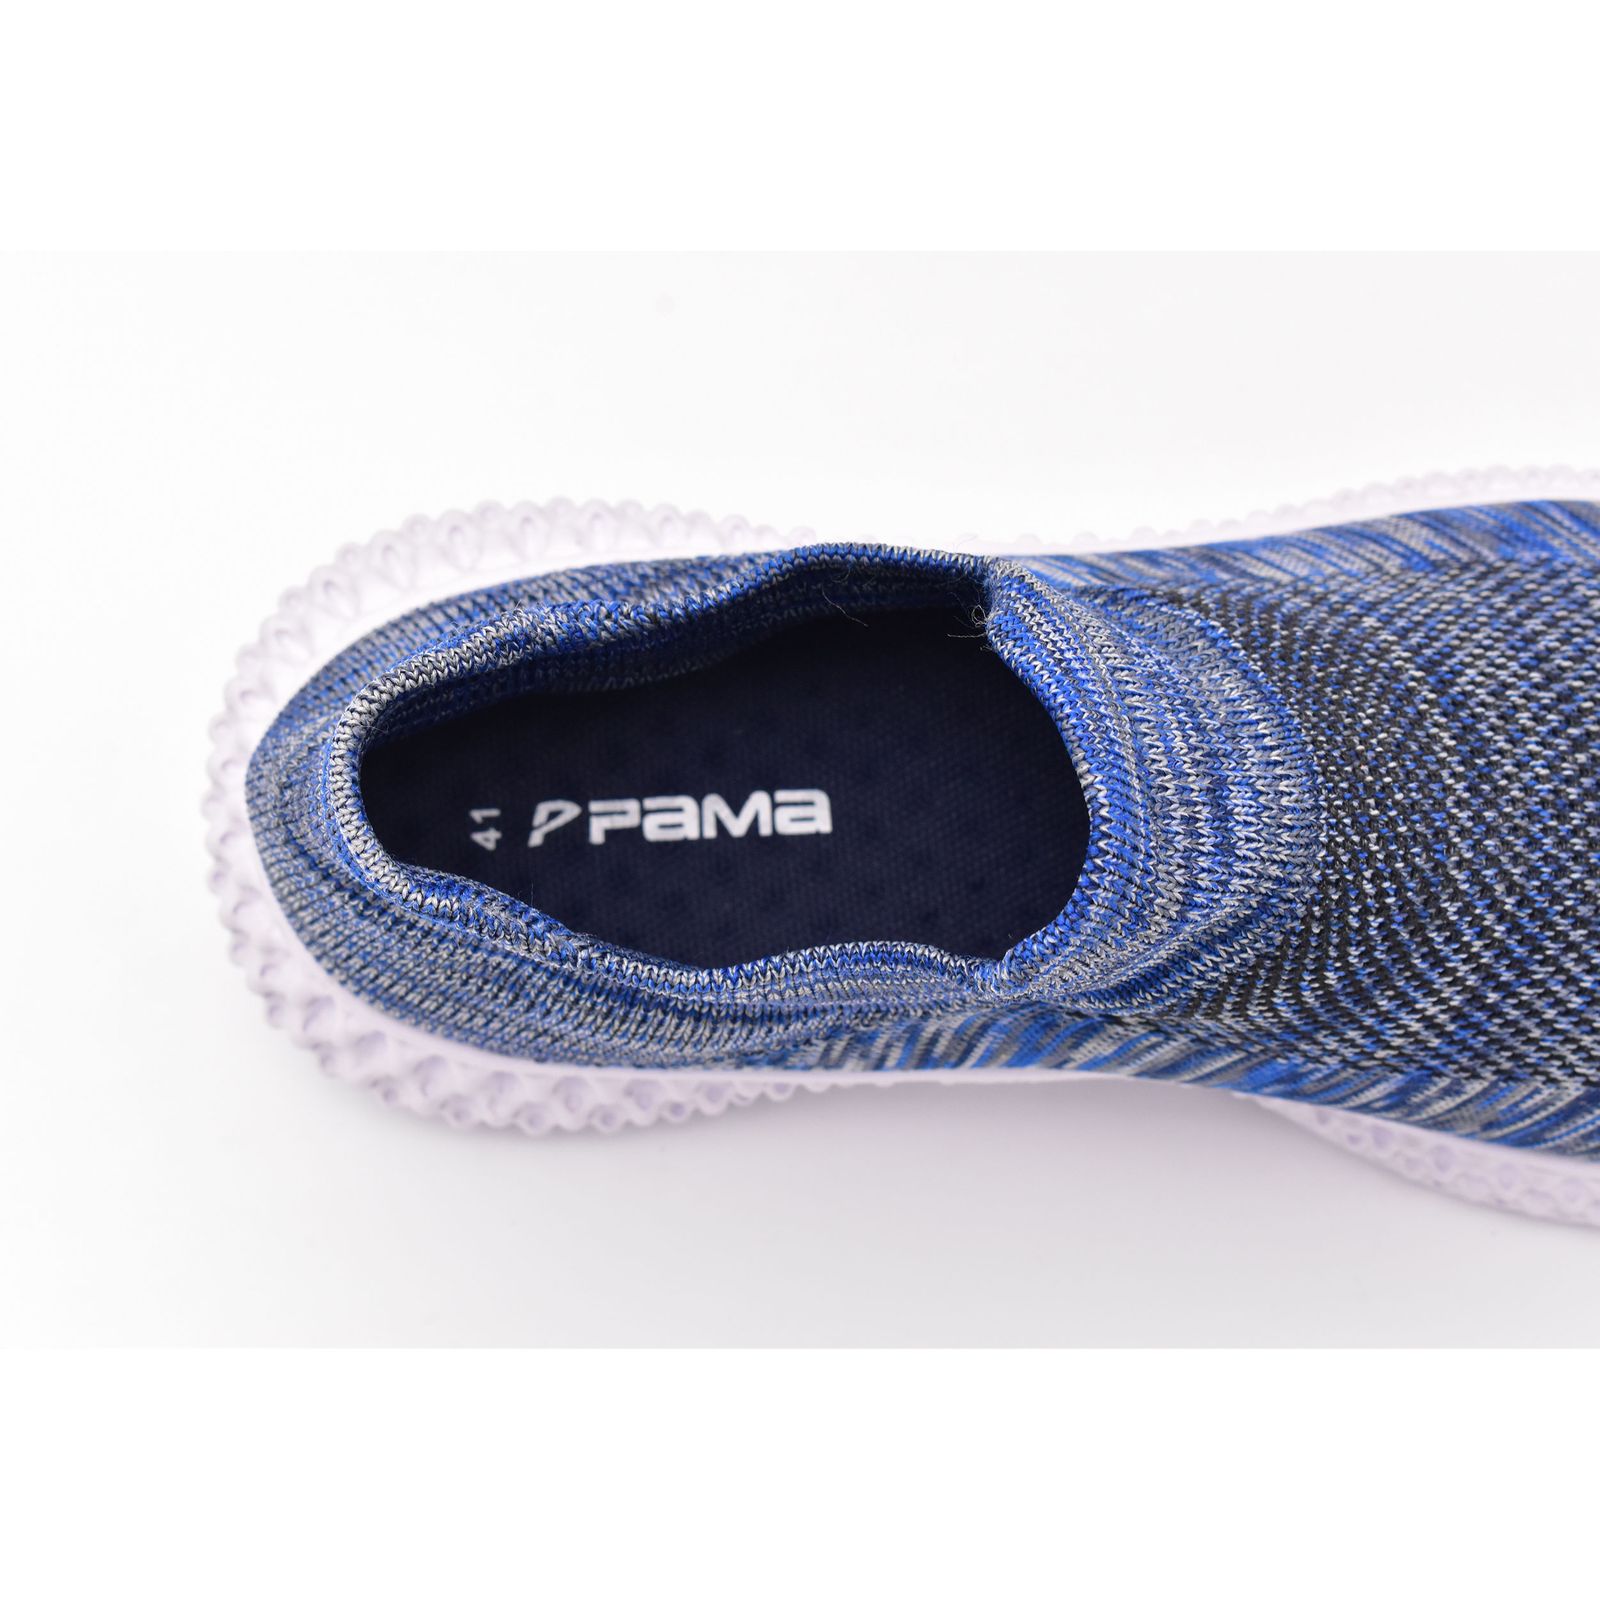 کفش پیاده روی مردانه پاما مدل N6-02 کد G1451 -  - 8